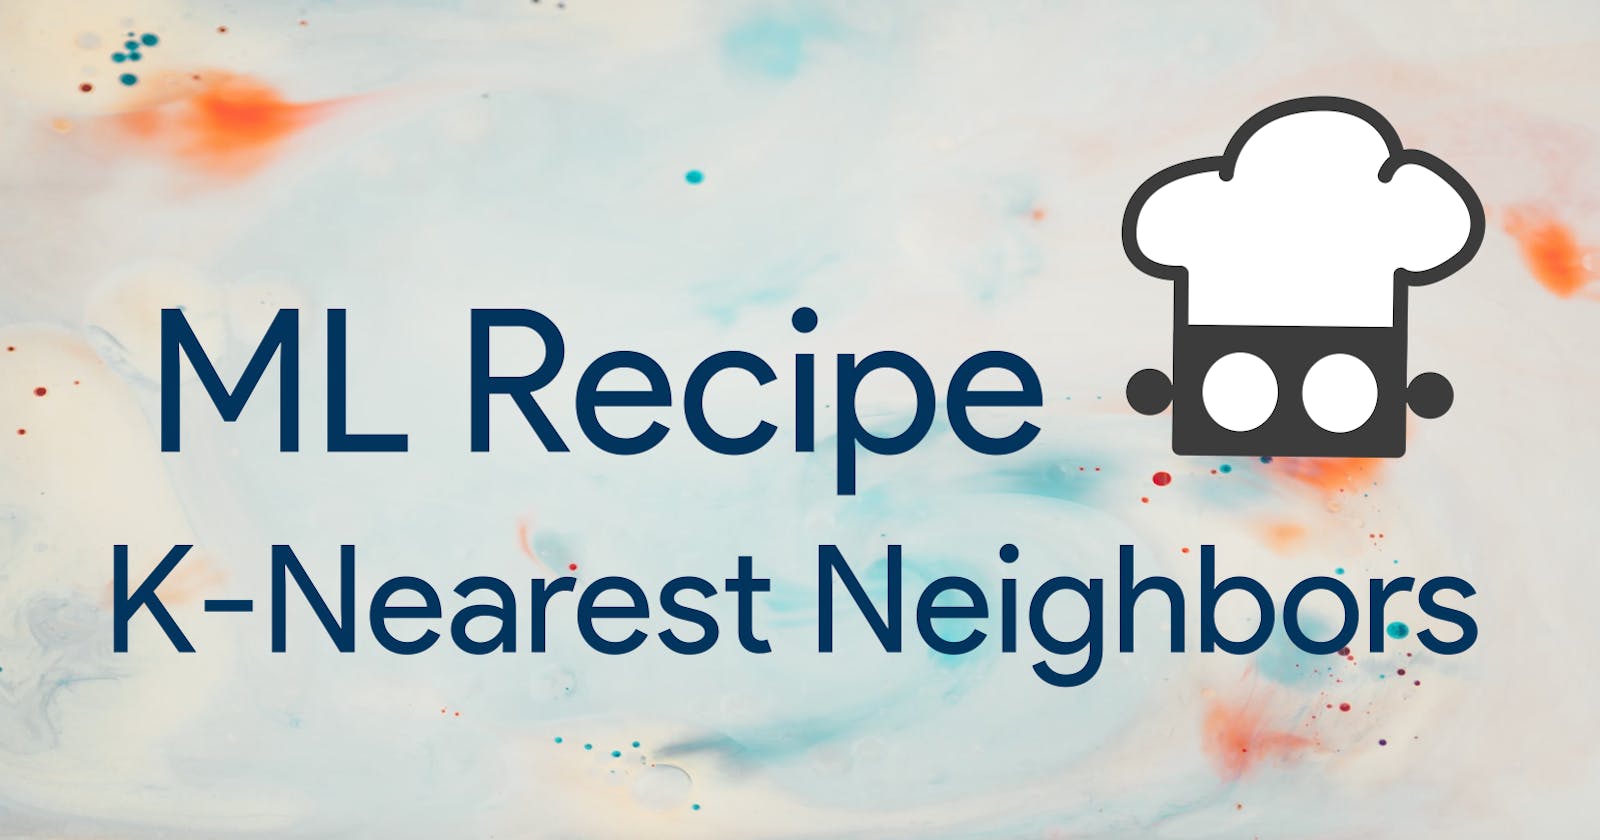 Simple K-Nearest Neighbors Recipe